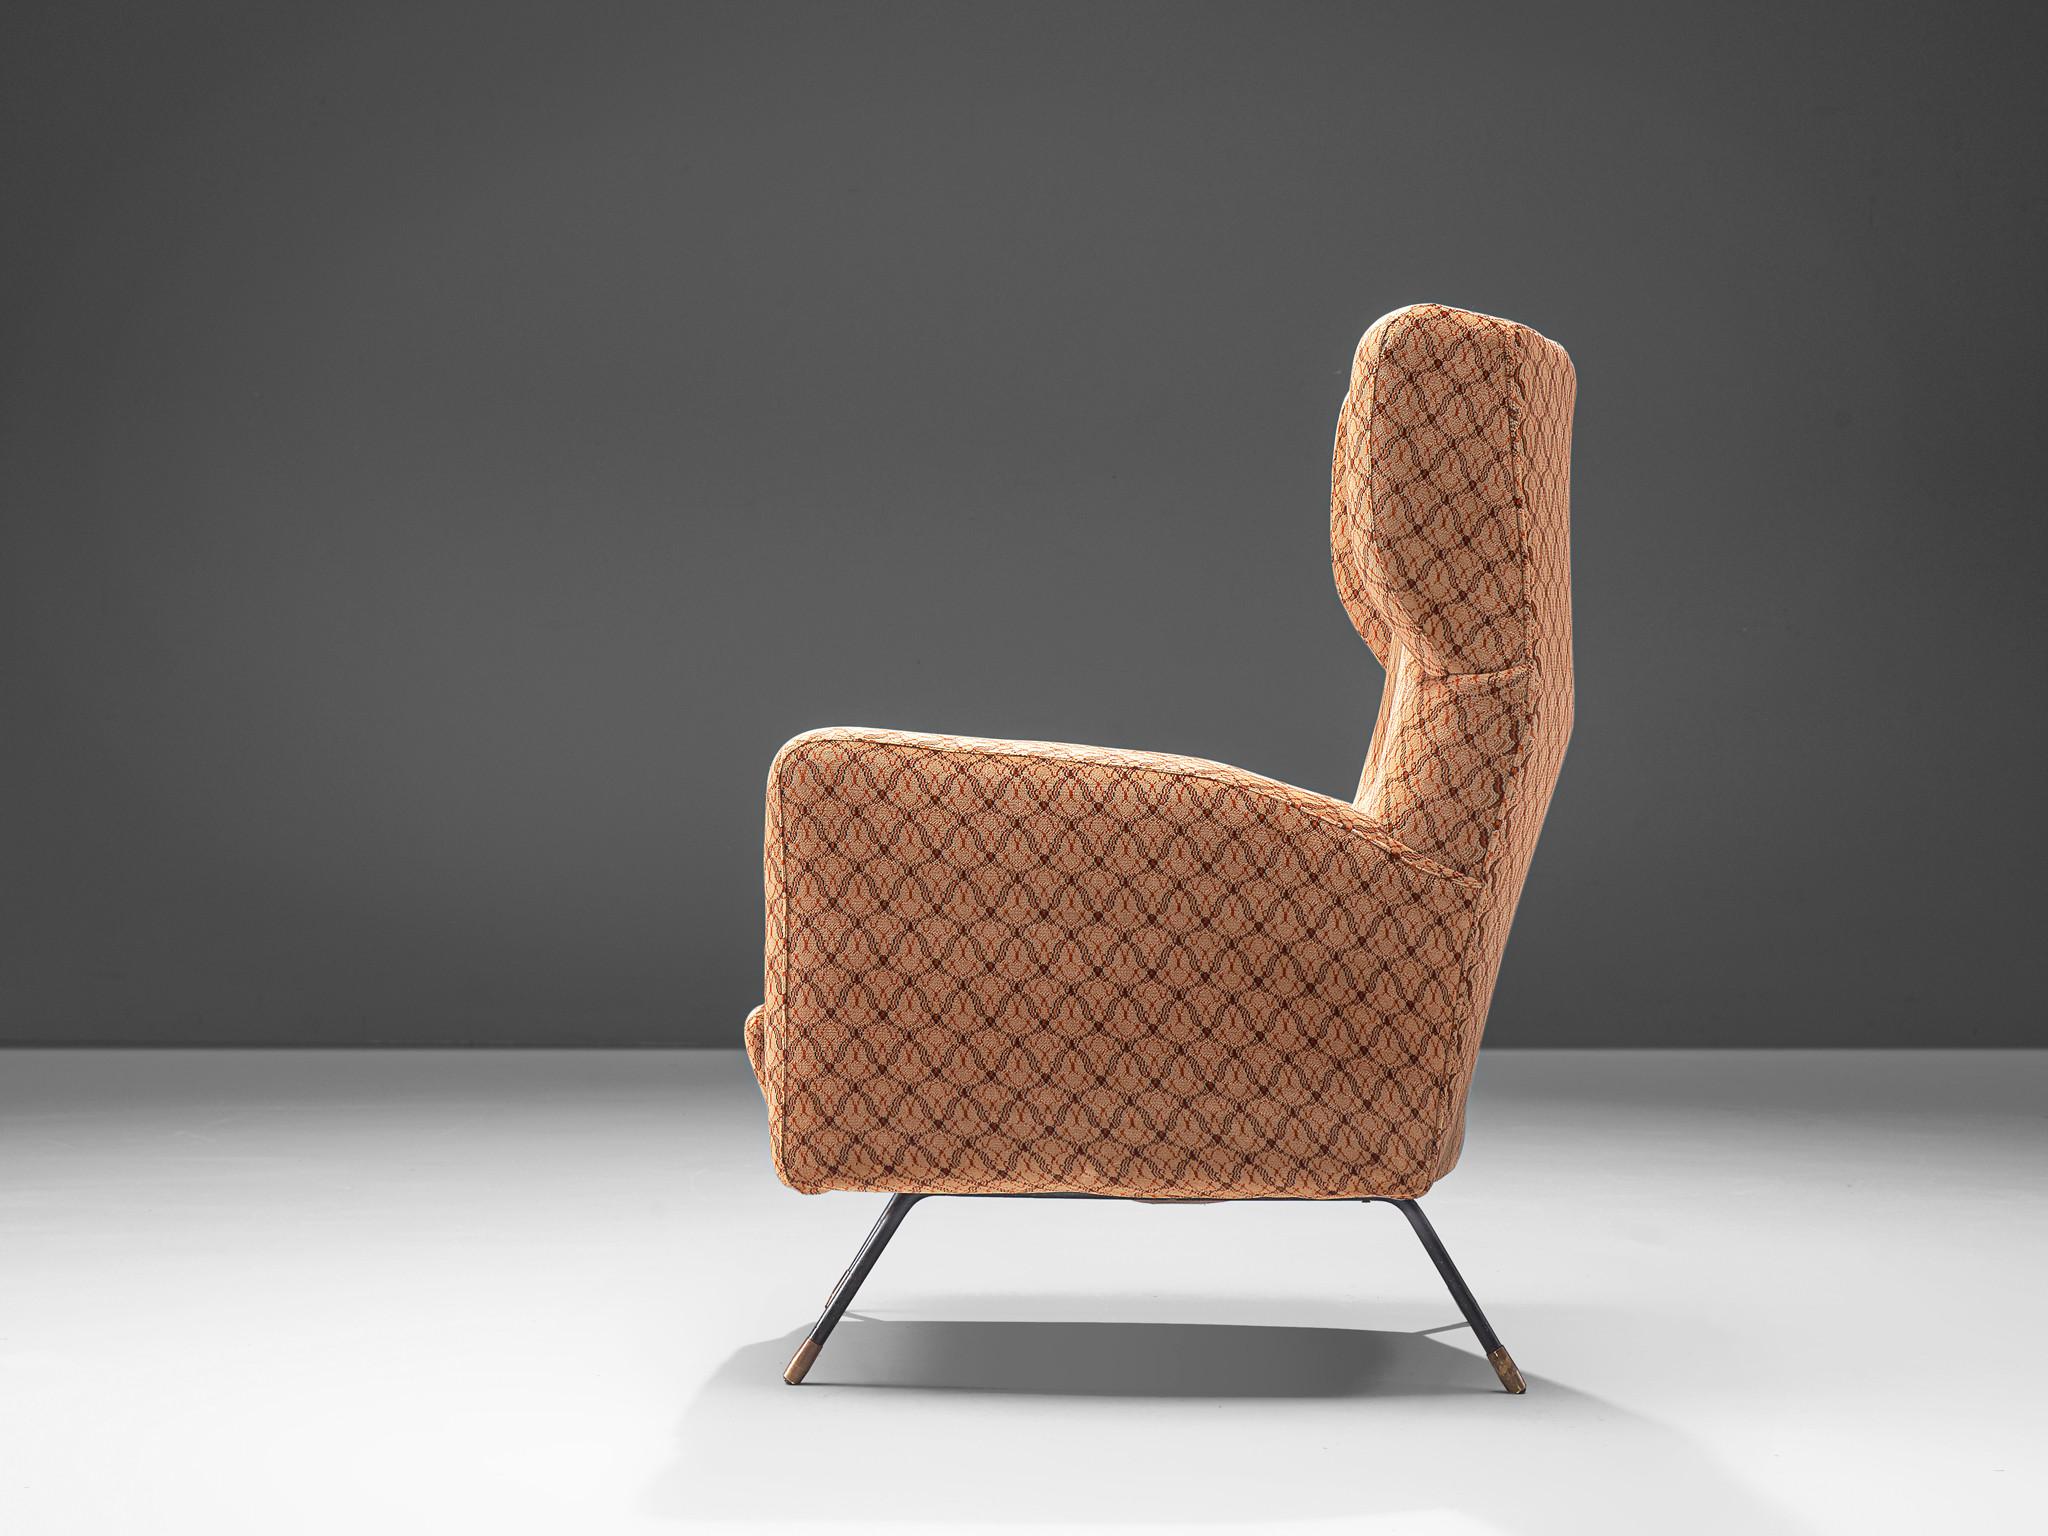 Arflex, Loungesessel, Metall, Messing, Stoff, Metall, Italien, 1960er

Bewundernswerter Loungesessel, hergestellt von Arflex. Charakteristisch für den Stuhl sind die nach außen gerichteten Armlehnen und die dynamische Linienführung des Sitzes. Dank